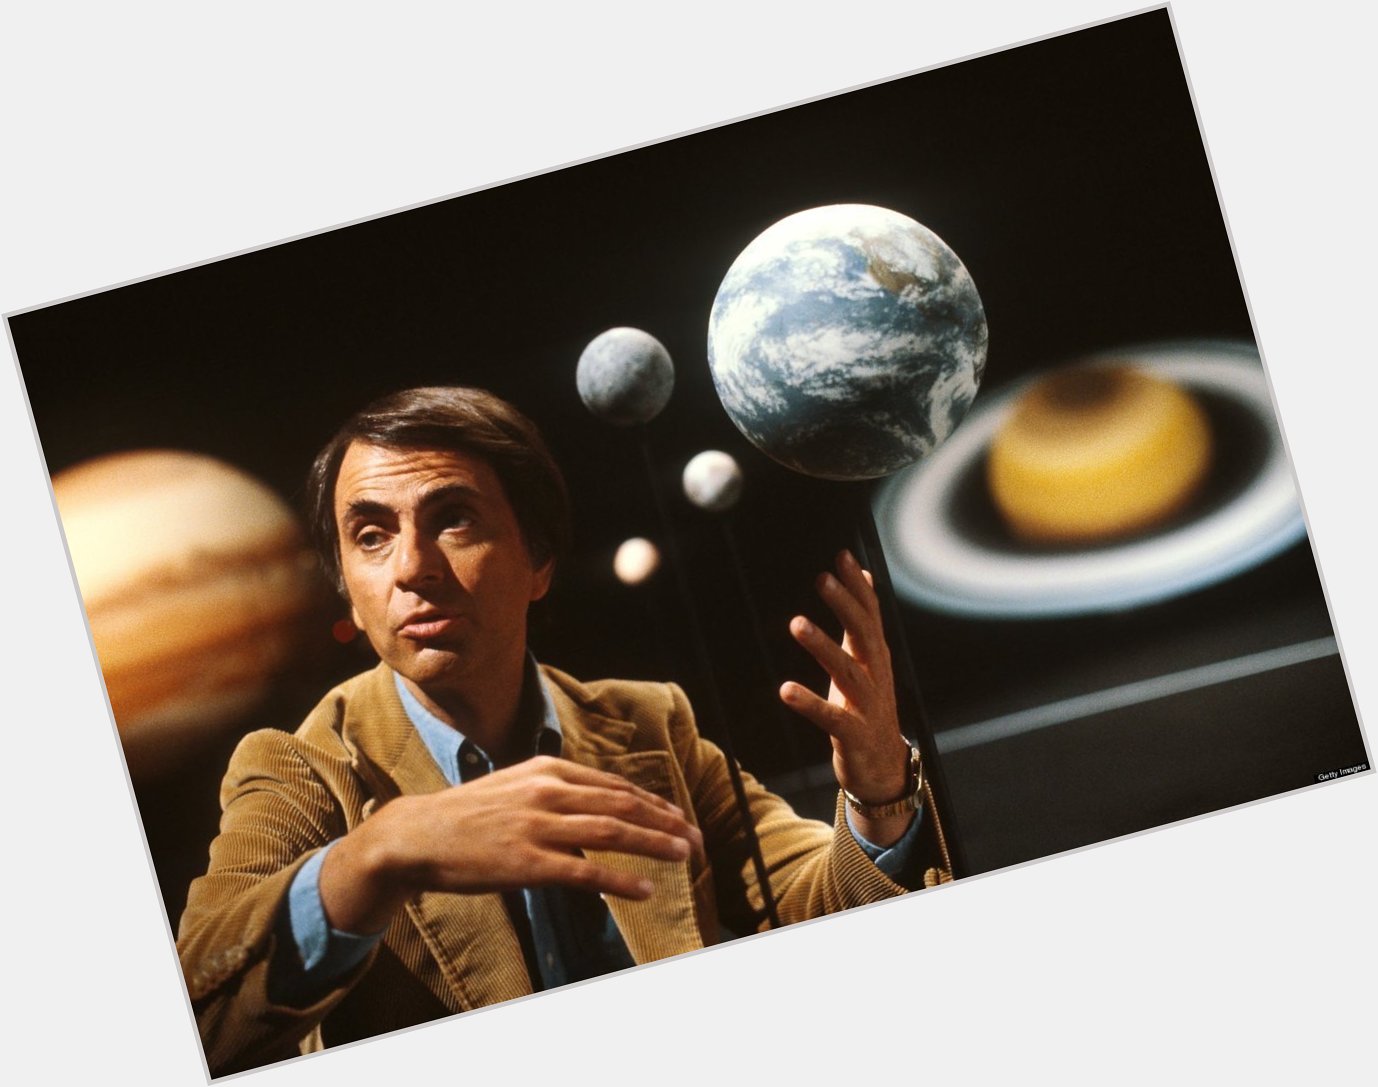 Happy birthday Carl Sagan - this is still a fine tribute.  